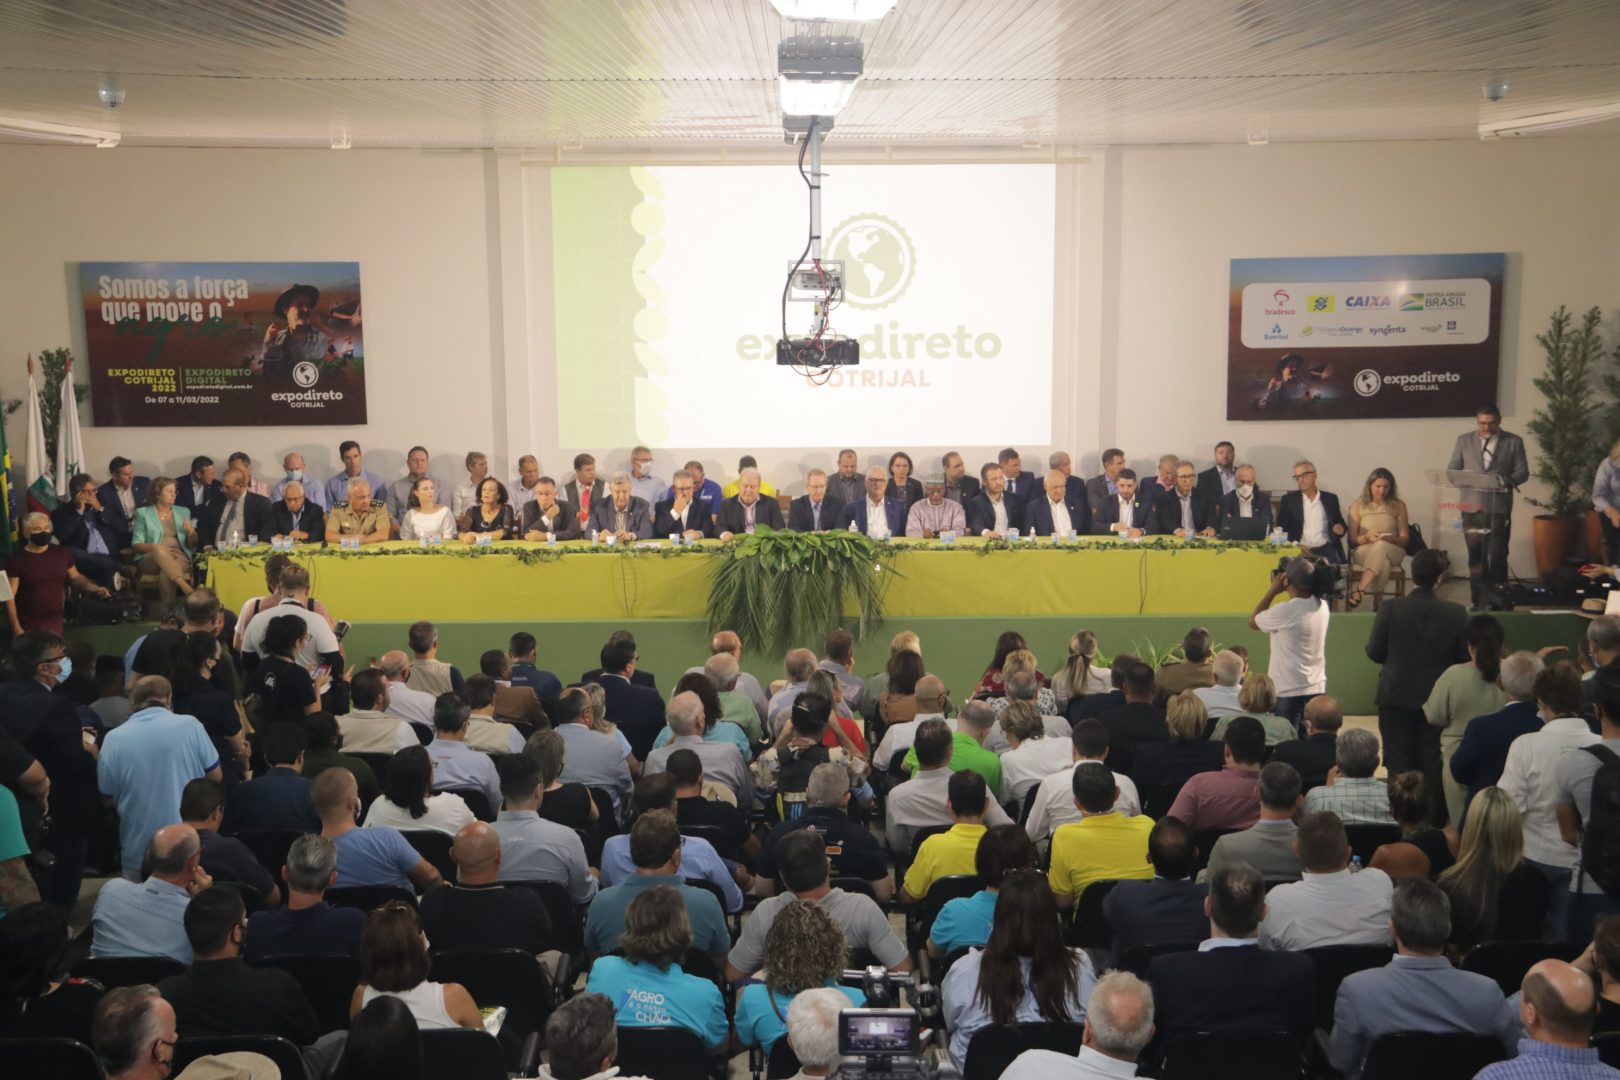 Expodireto - Notícias - Troféu Brasil Expodireto homenageia lideranças do  agronegócio brasileiro